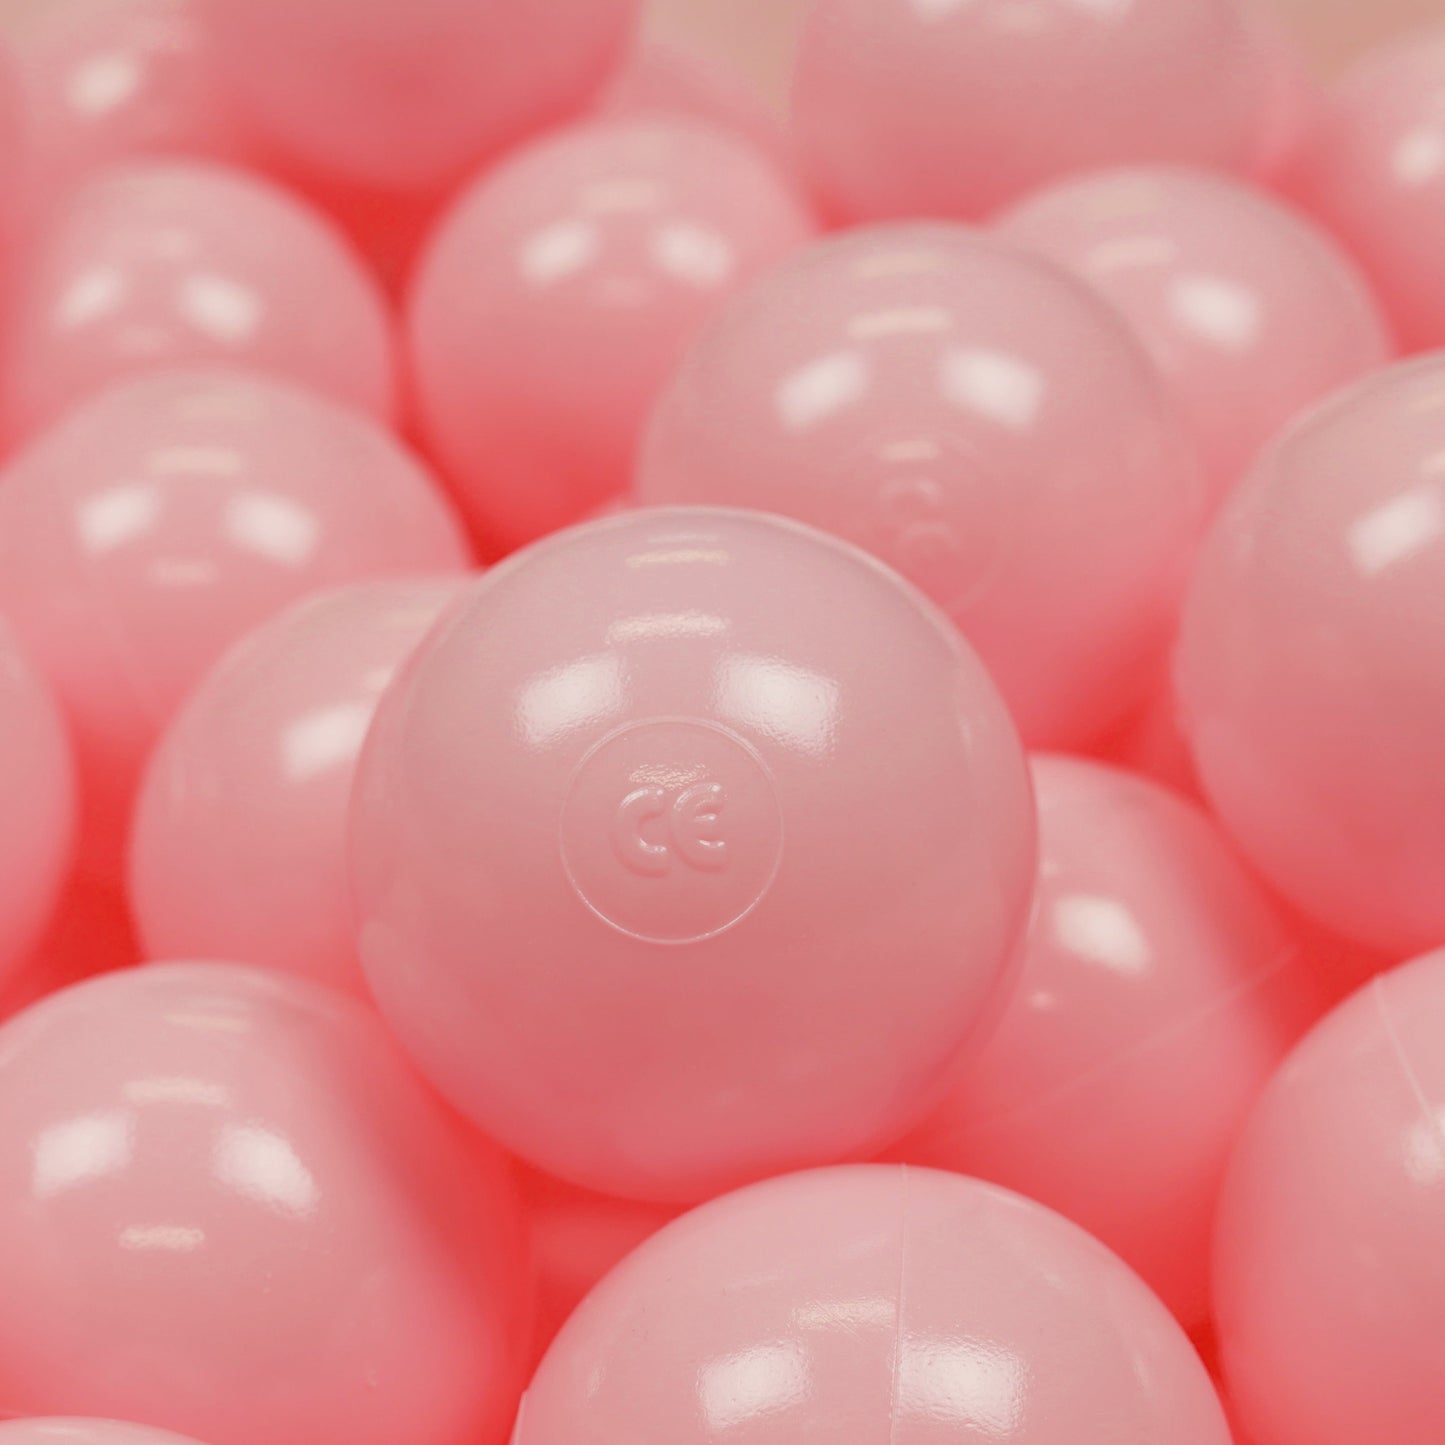 Balles de jeu ø7cm 500 pièces rose clair